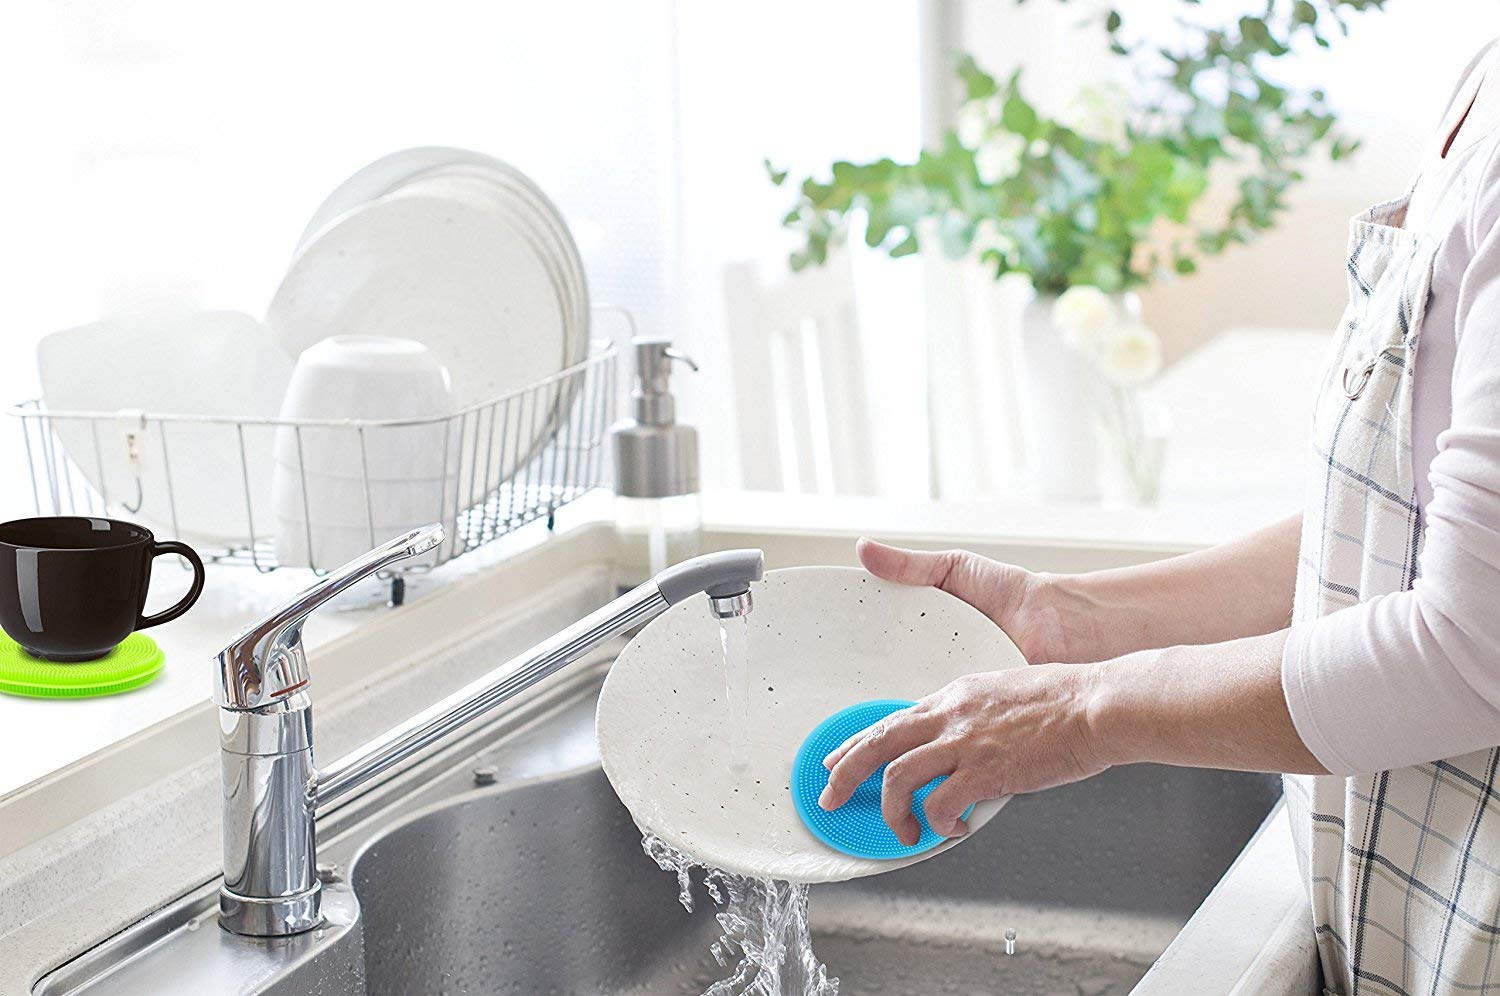 CRAZYON Multi usages Silicone Brosse à Vaisselle de Nettoyage de Cuisine Lave Vaisselle éponge